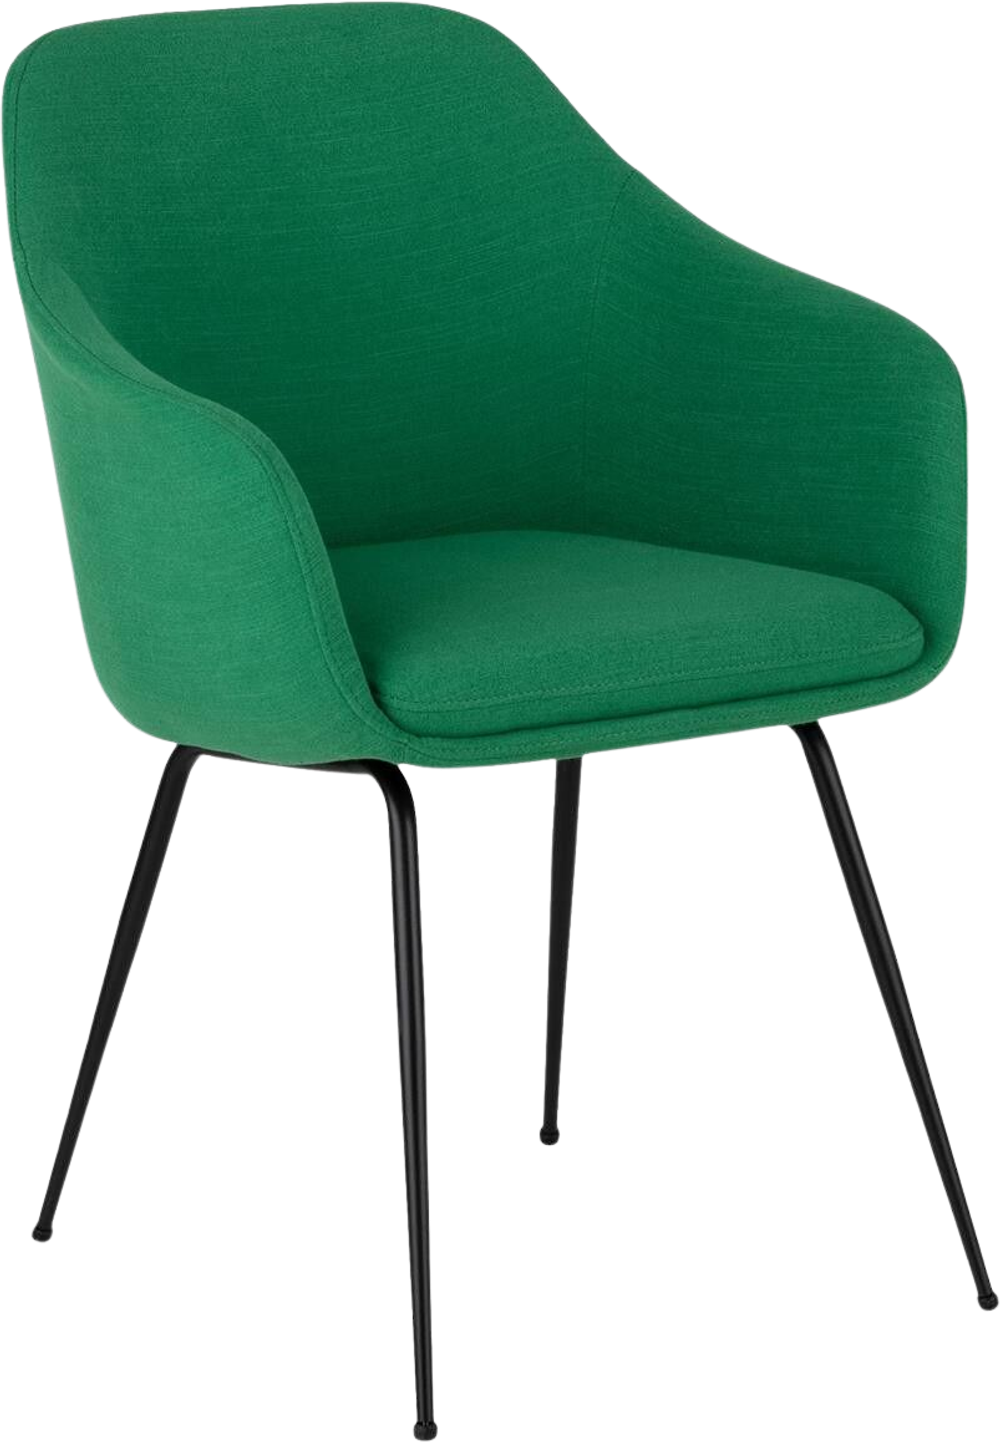 Tilbud på MERCY spisebordsstol stof grøn (GRØN ONESIZE) (Furniture by Sinnerup) fra Sinnerup til 799 kr.